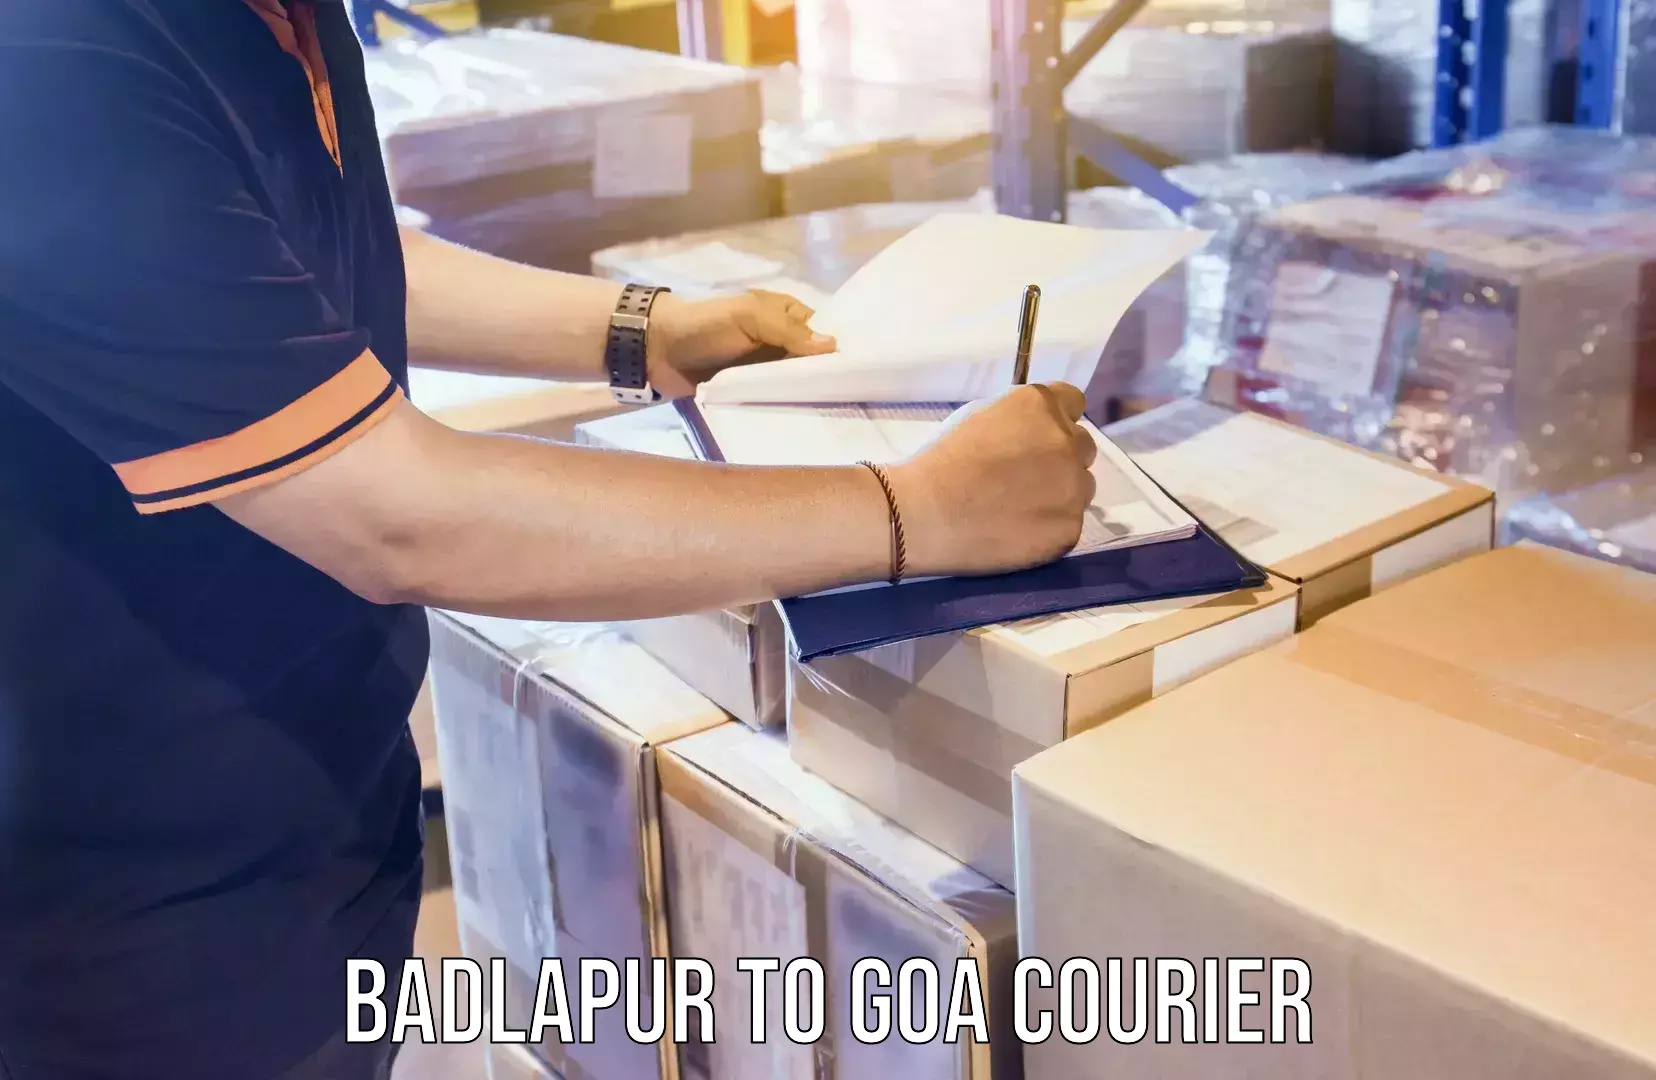 Ocean freight courier Badlapur to Goa